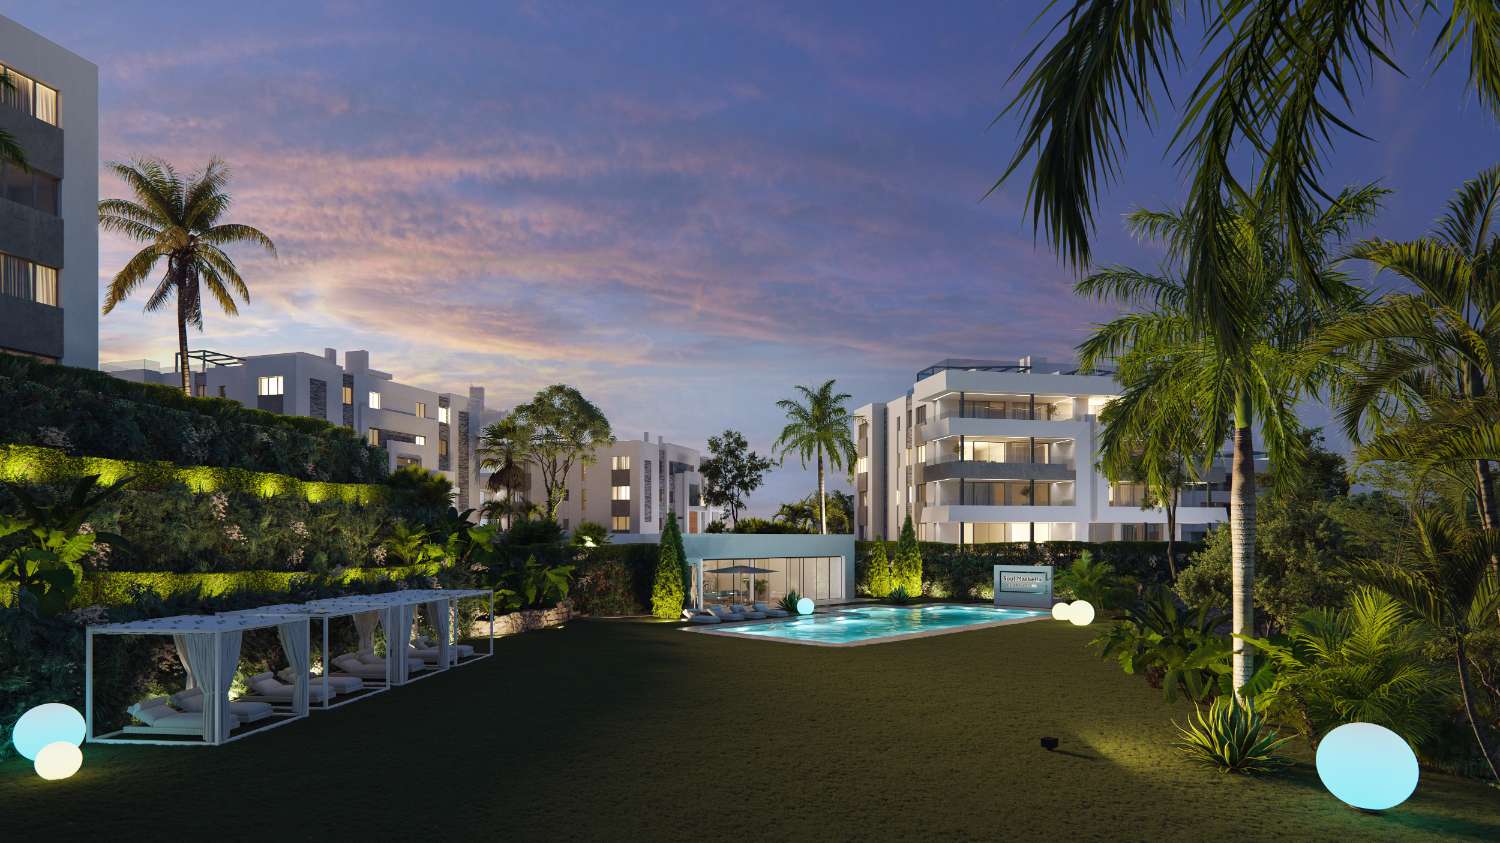 Appartement spacieux avec jardin privé dans une urbanisation luxueuse dans un complexe hôtelier à Marbella, sur la première ligne du parcours de golf